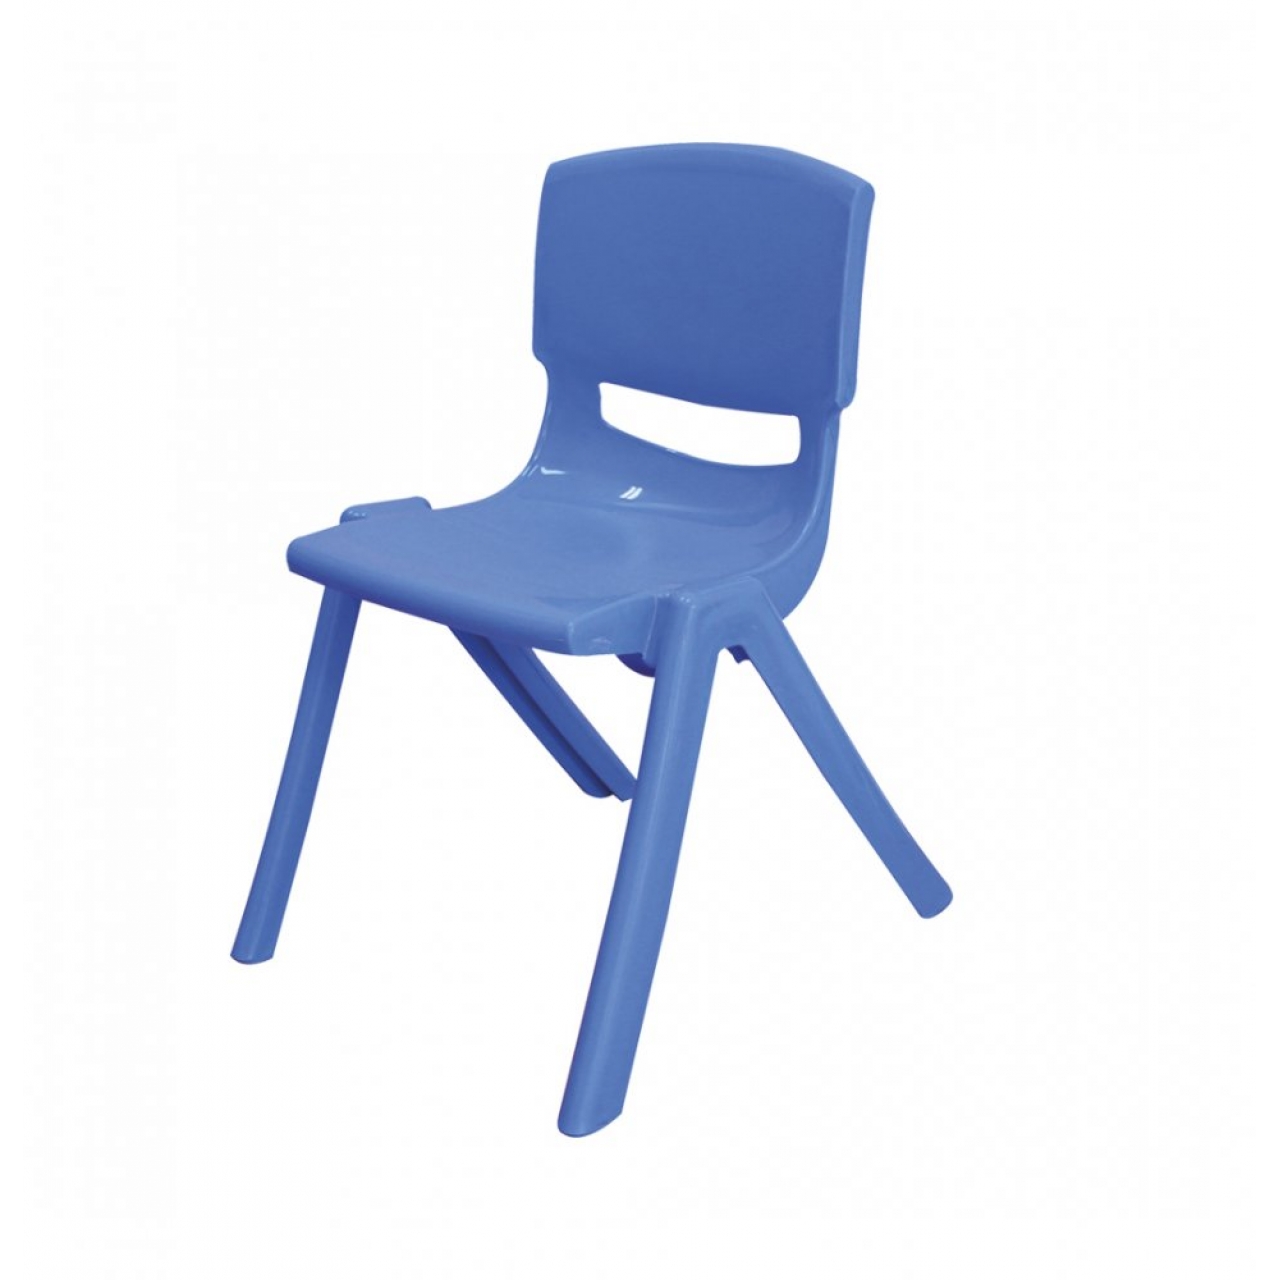 Kırılmaz Plastik Çocuk Sandalyesi-32 cm